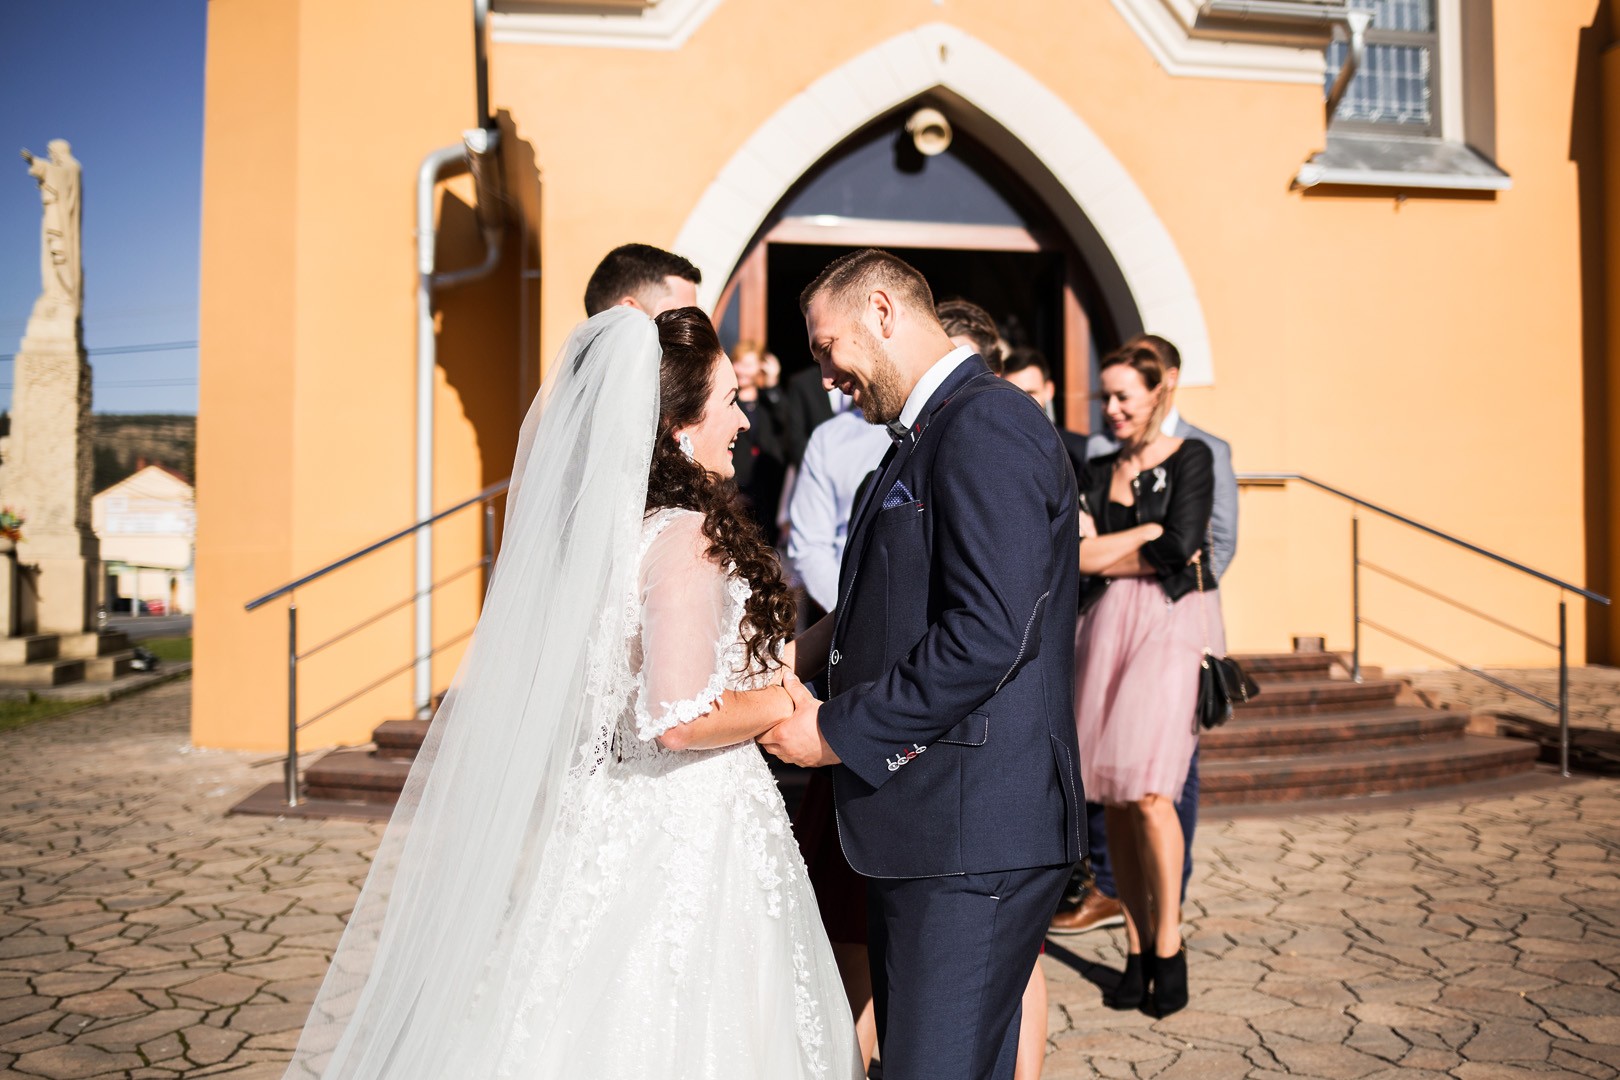 Wedding photos Zdenka and Marko - 0166.jpg